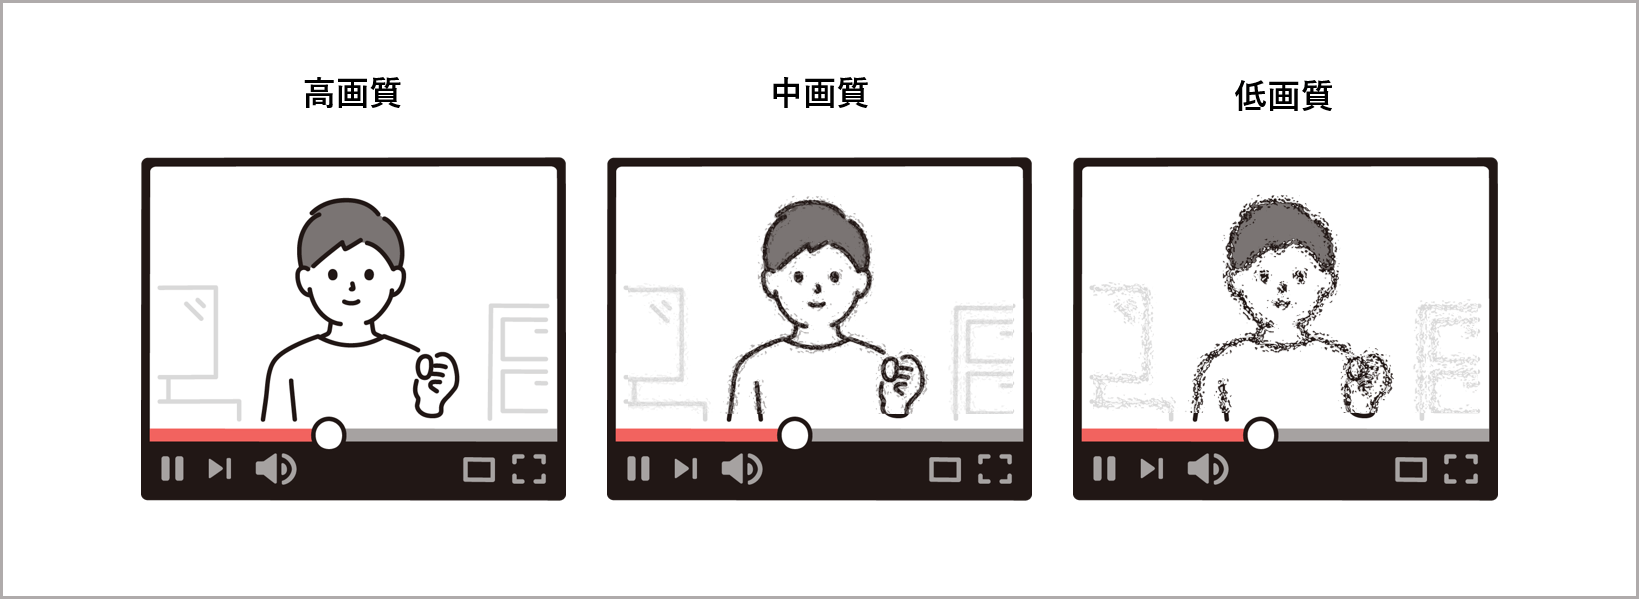 動画の「トランスコード」とはなにかを画で説明した画像